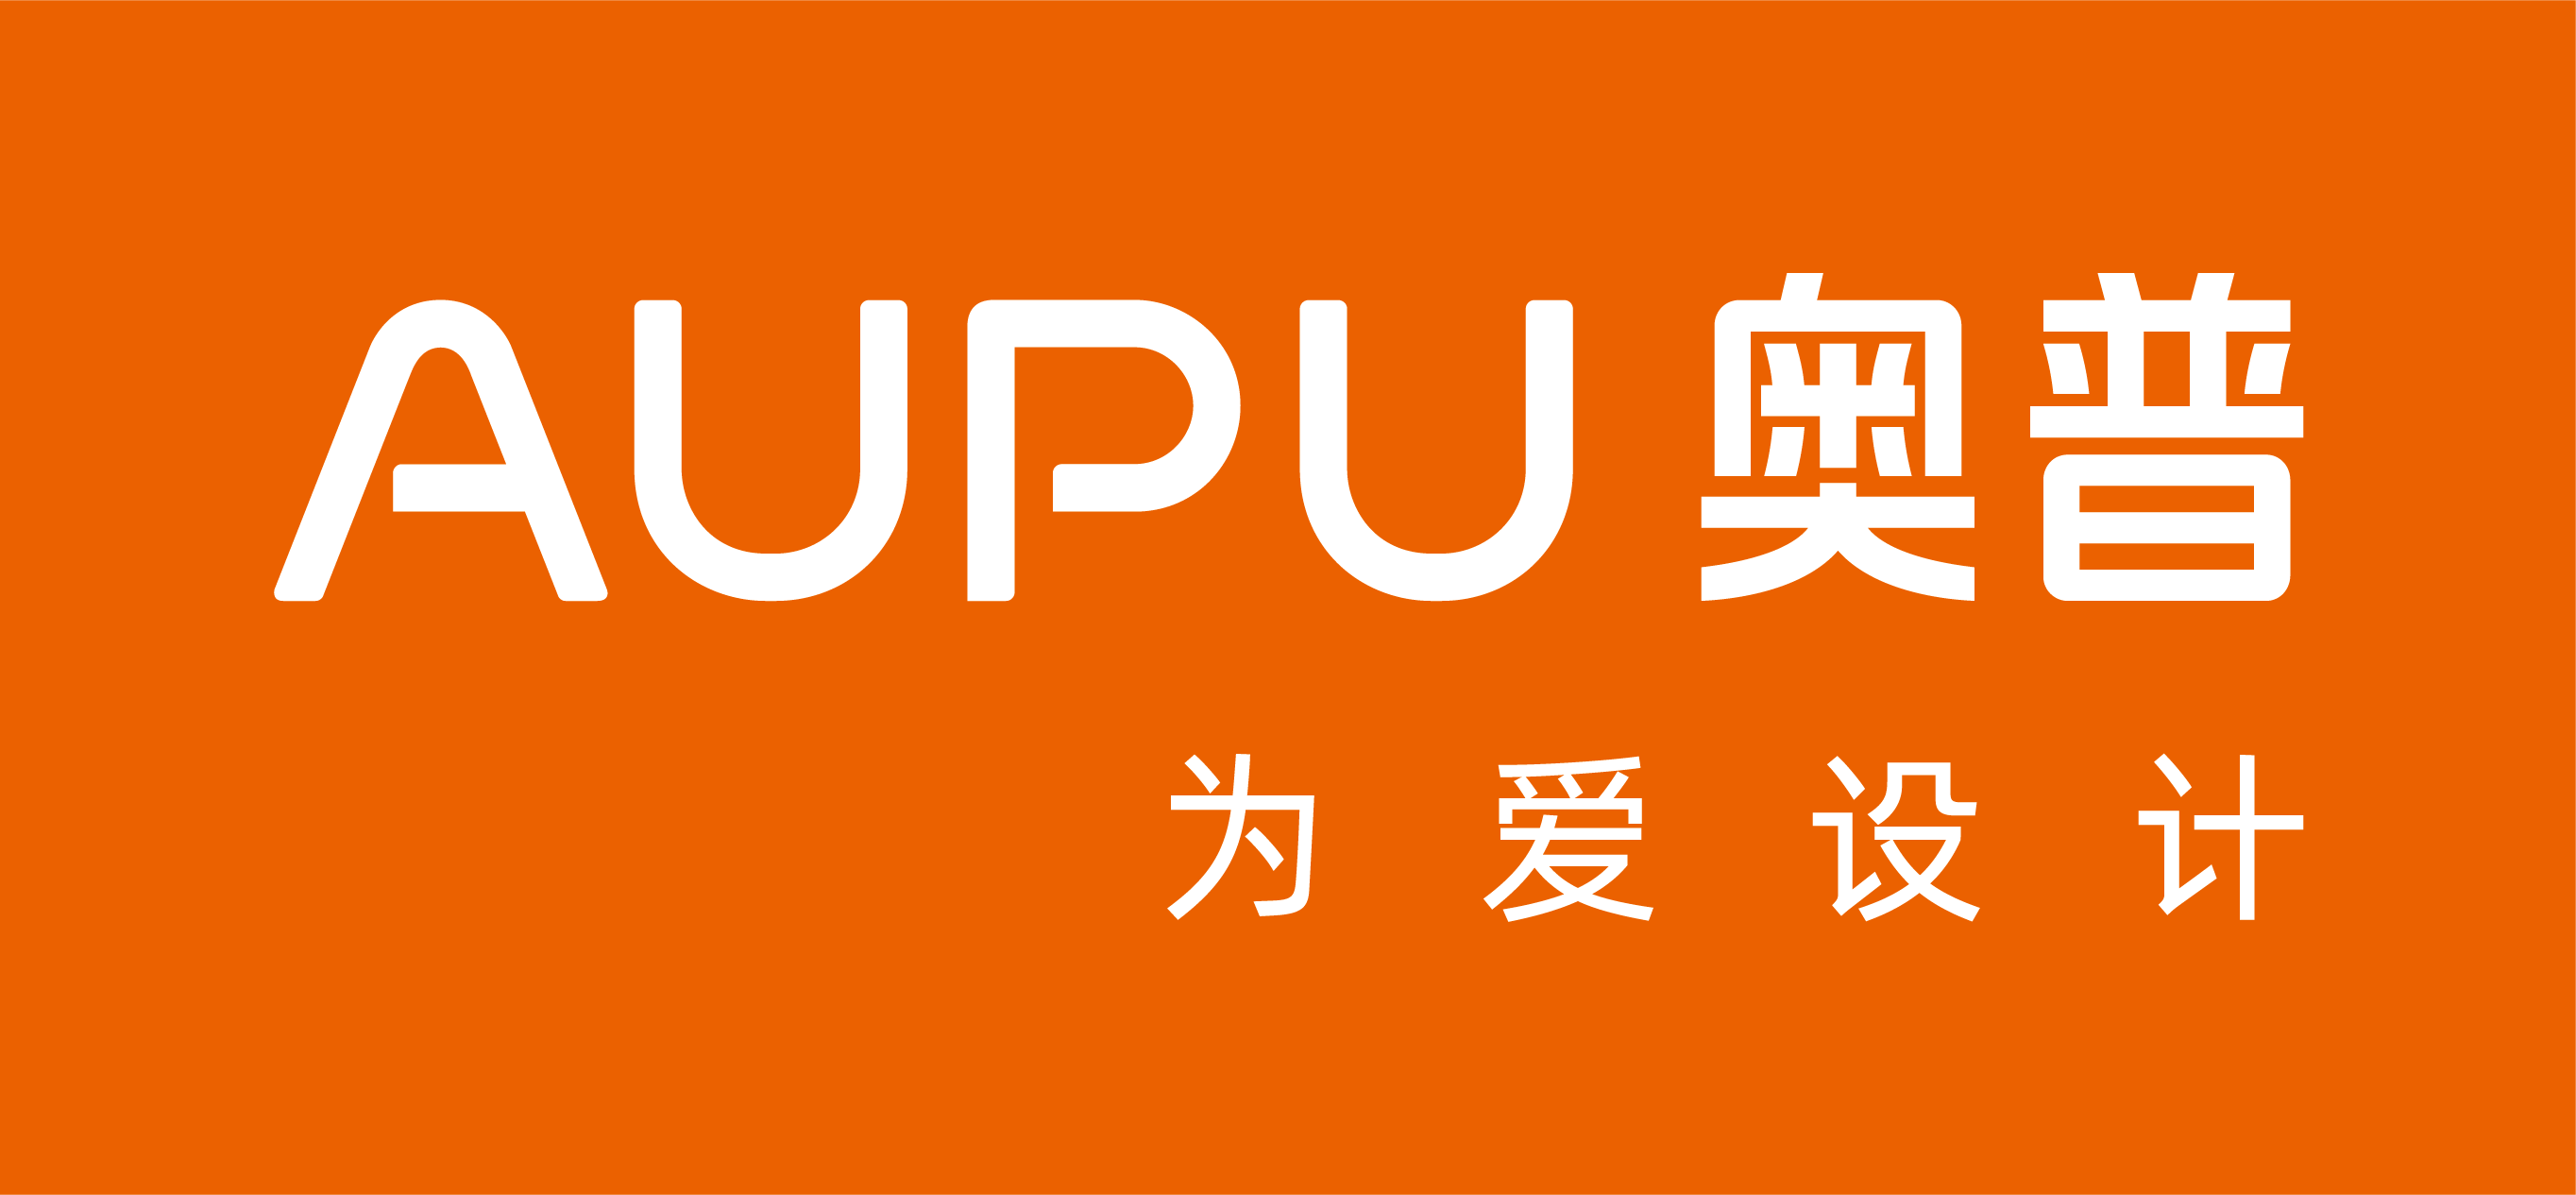 AUPU奥普为爱设计橙底白字.png